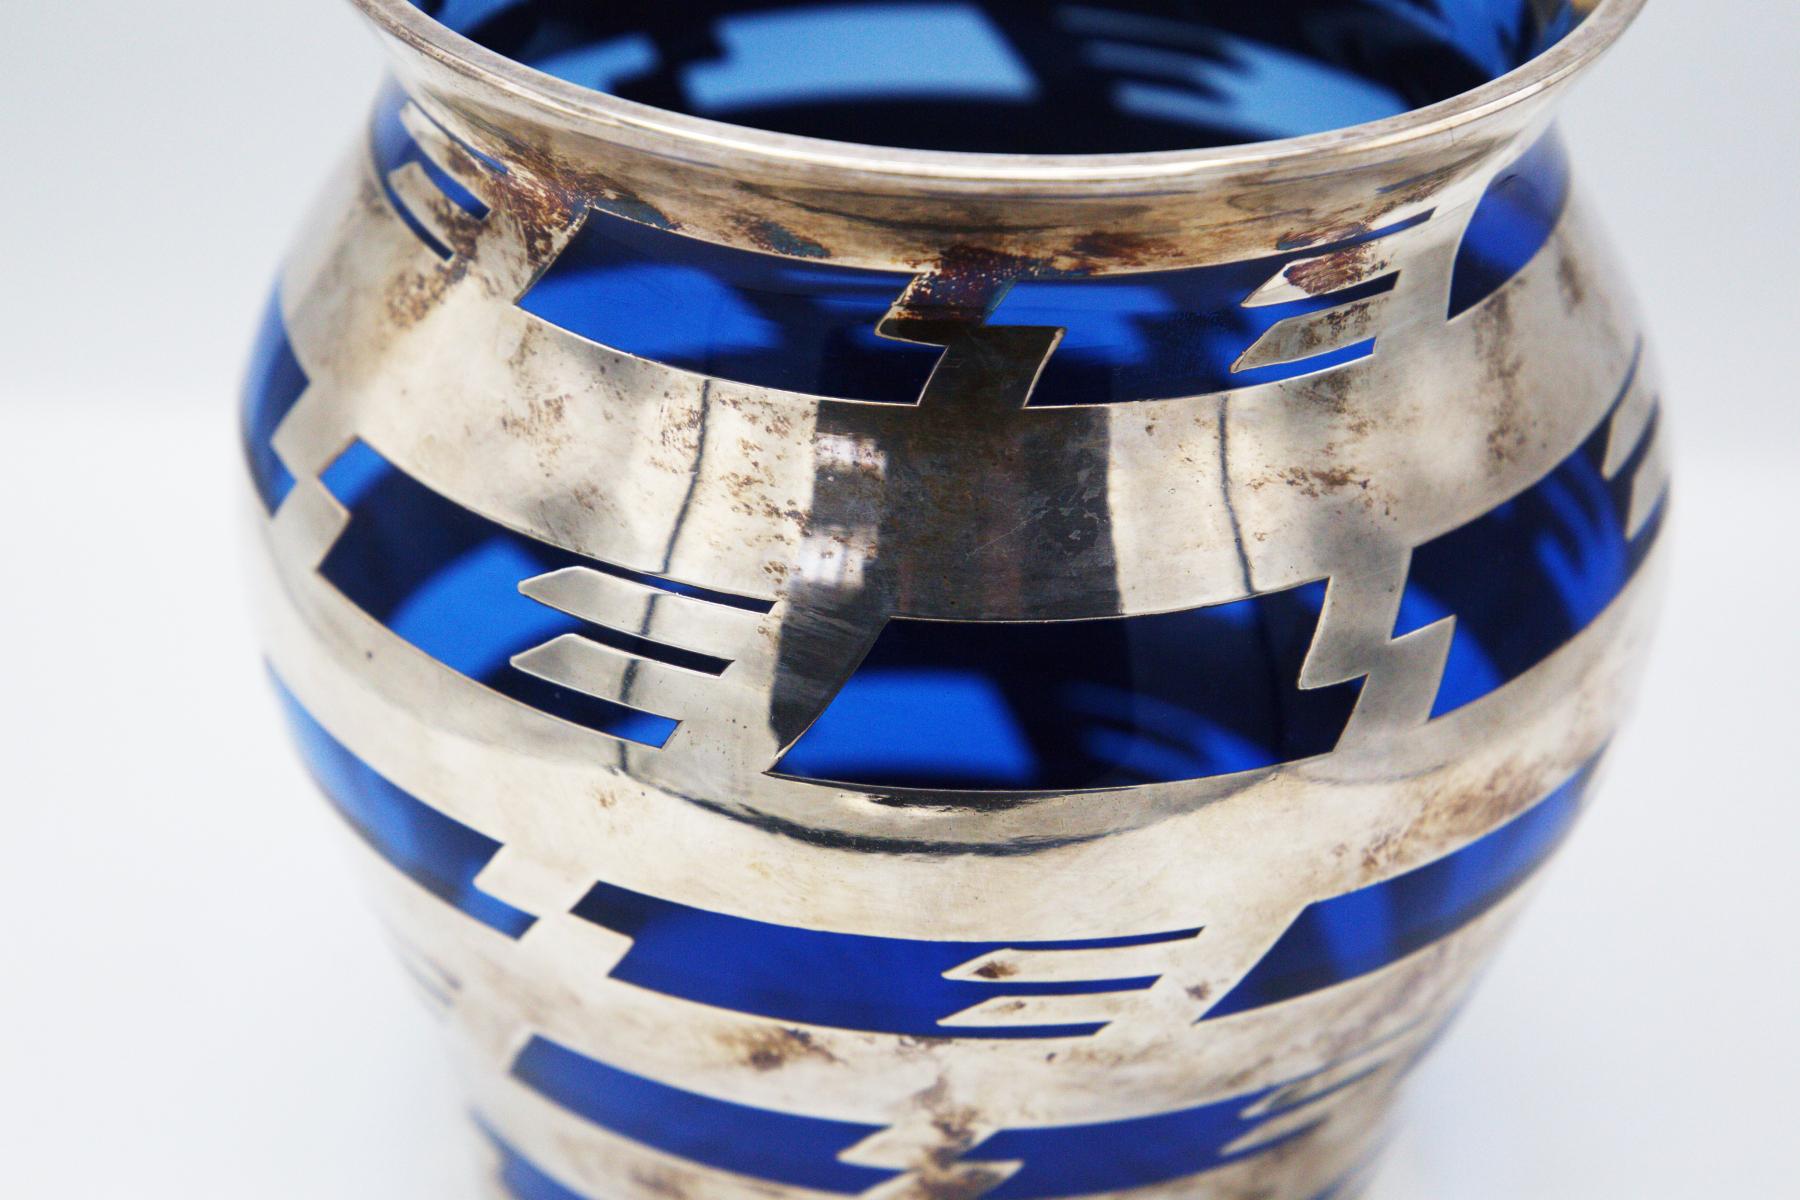 Magnifique vase en verre bleu vintage conçu par Bacarat dans les années 1920.
Le vase est fabriqué en métal argenté dans sa structure et, à travers un tissage à tissage à tissage plat, il crée un merveilleux effet d'entrelacement avec le verre